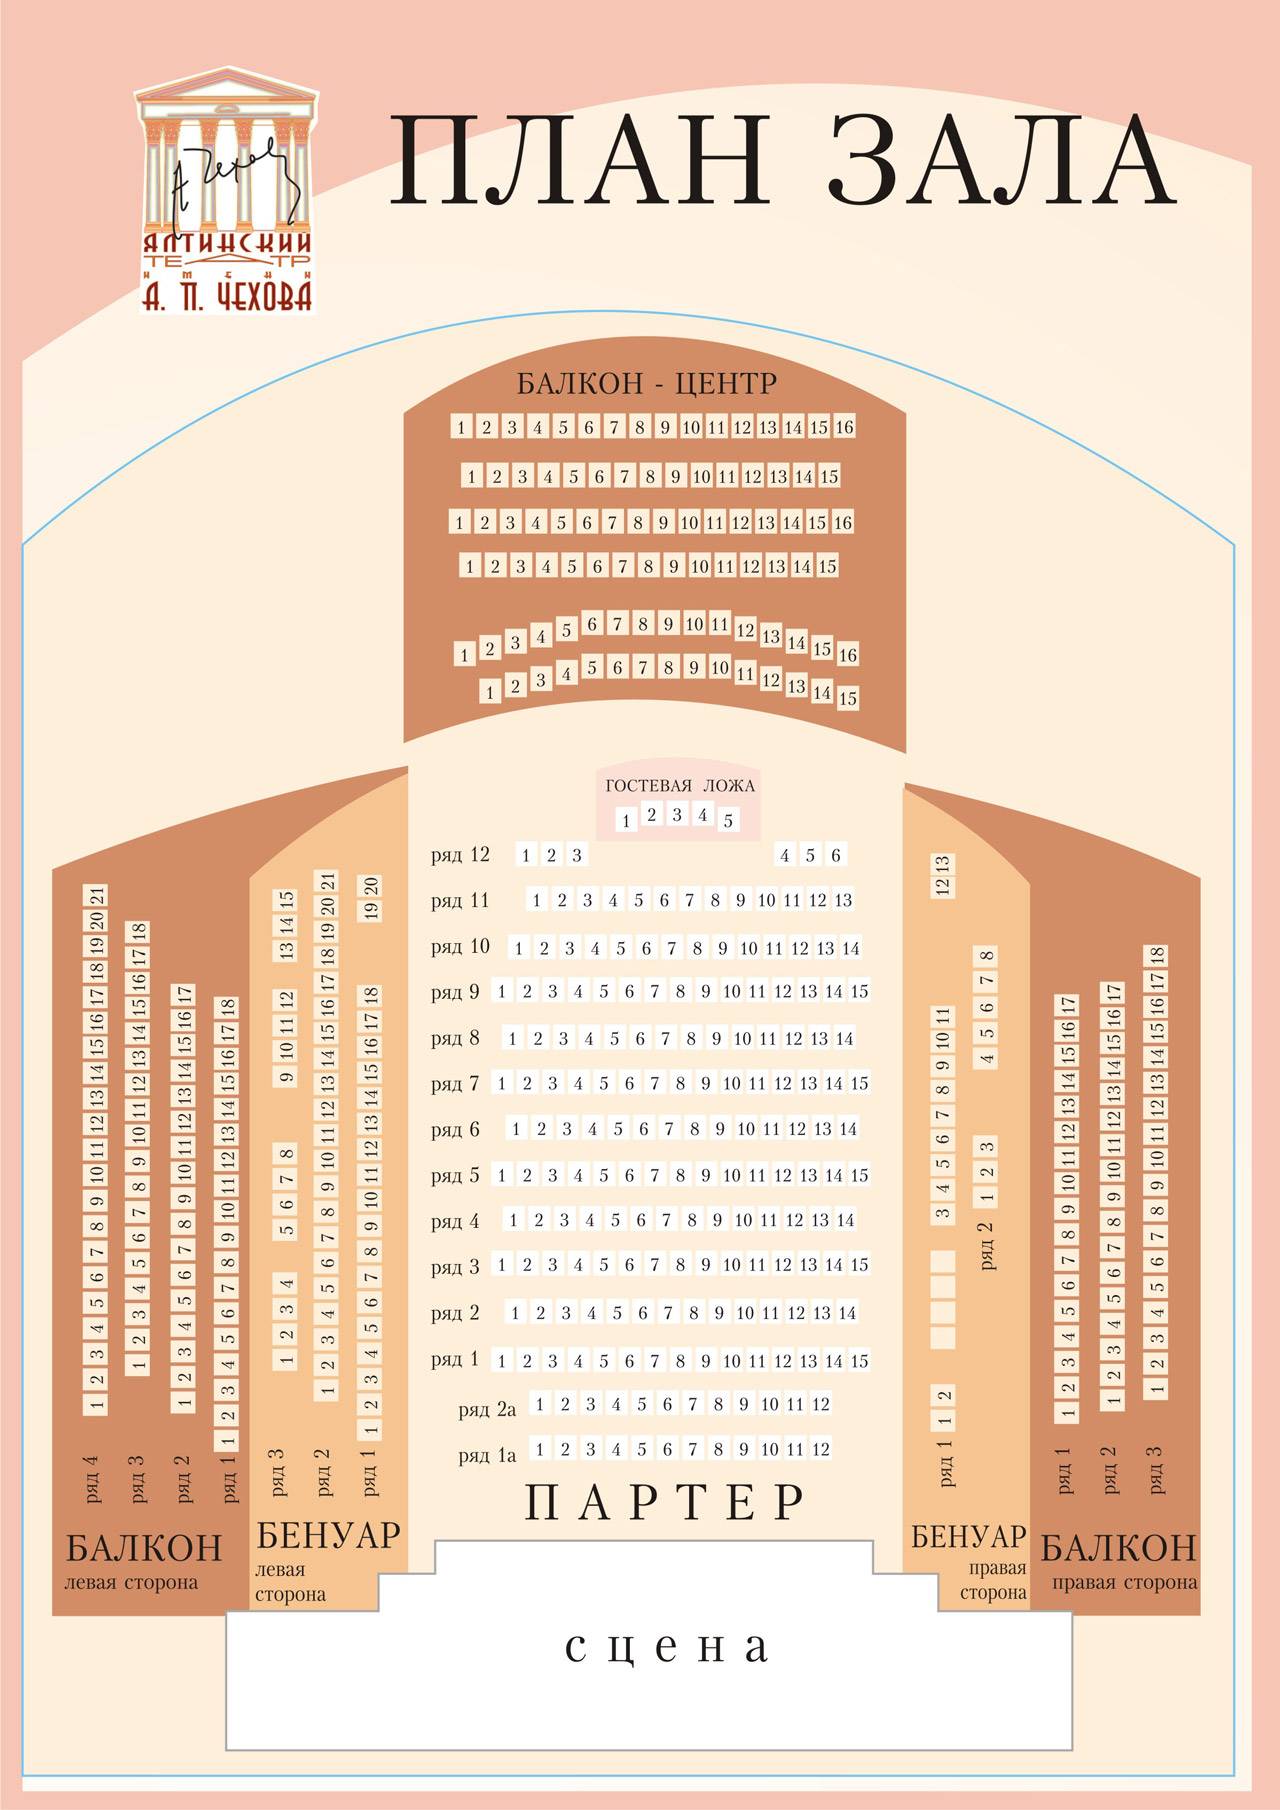 Схема мест в театре имени Чехова в Ялте